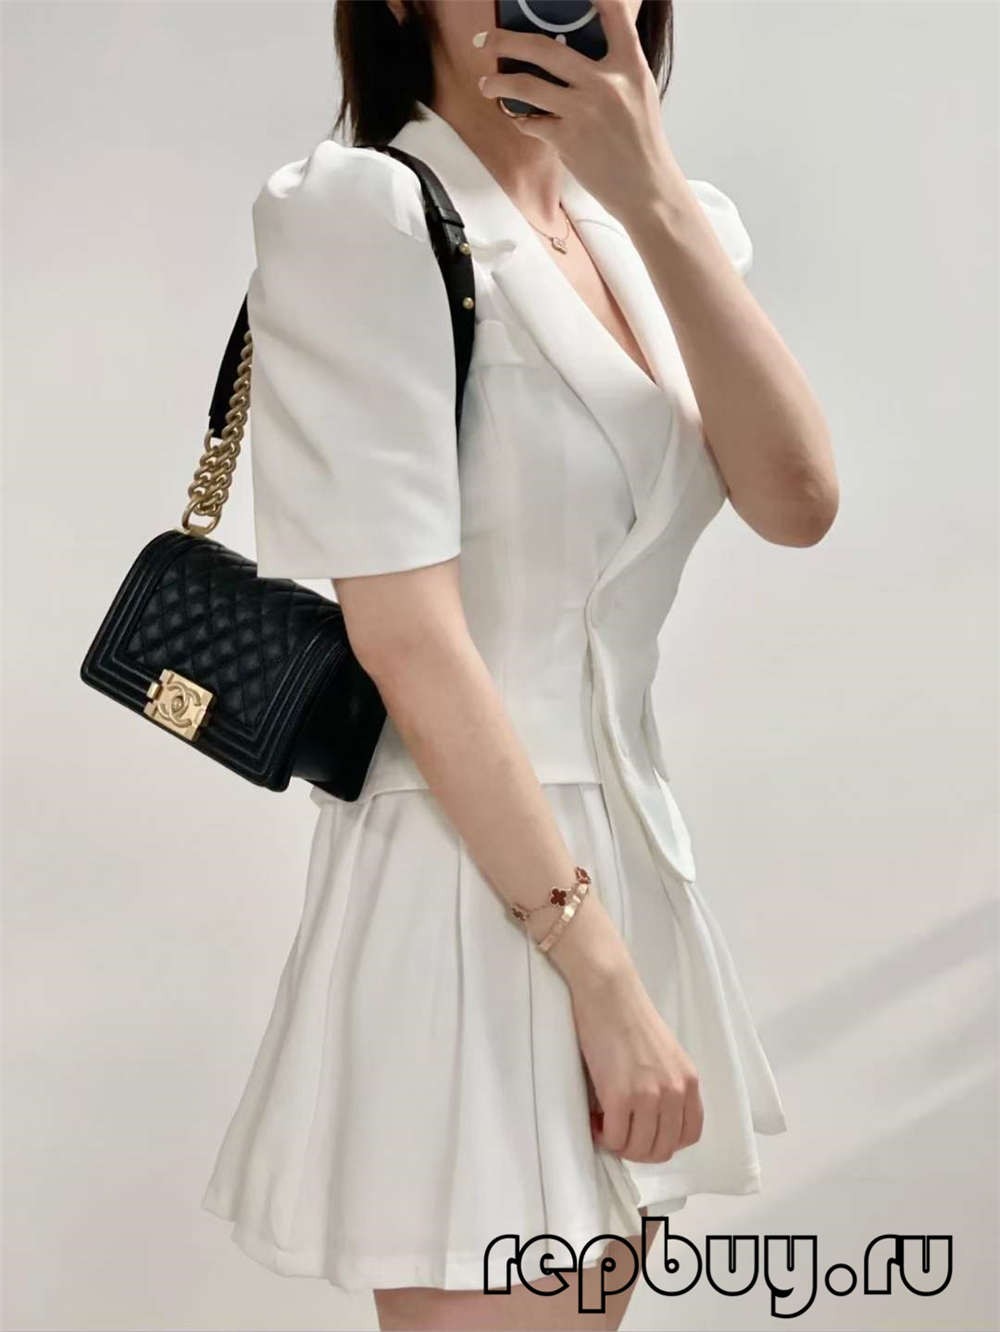 Chanel Leboy top replica handbags small gold buckle daily use effect (2022 Special)-Best Quality Fake designer Bag Review, Replica designer bag ru